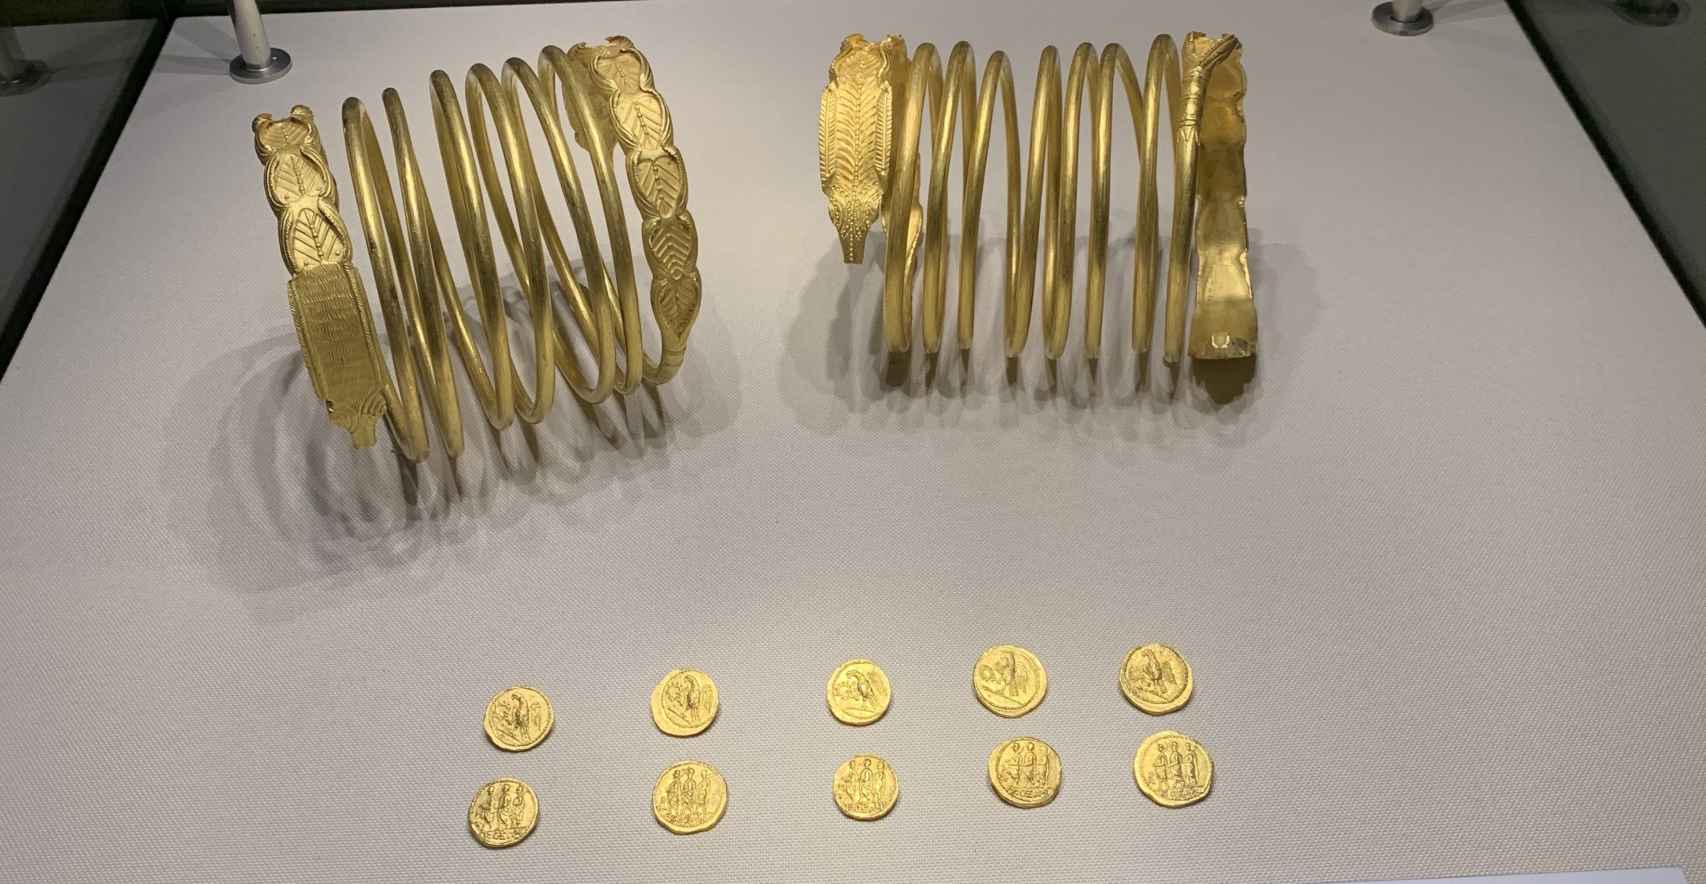 Estacios dacios de oro del rey Koson (siglo I a.C.) y brazaletes reales, decorados con dragones alados que se convertirían en el prototipo de la simbología dacia.